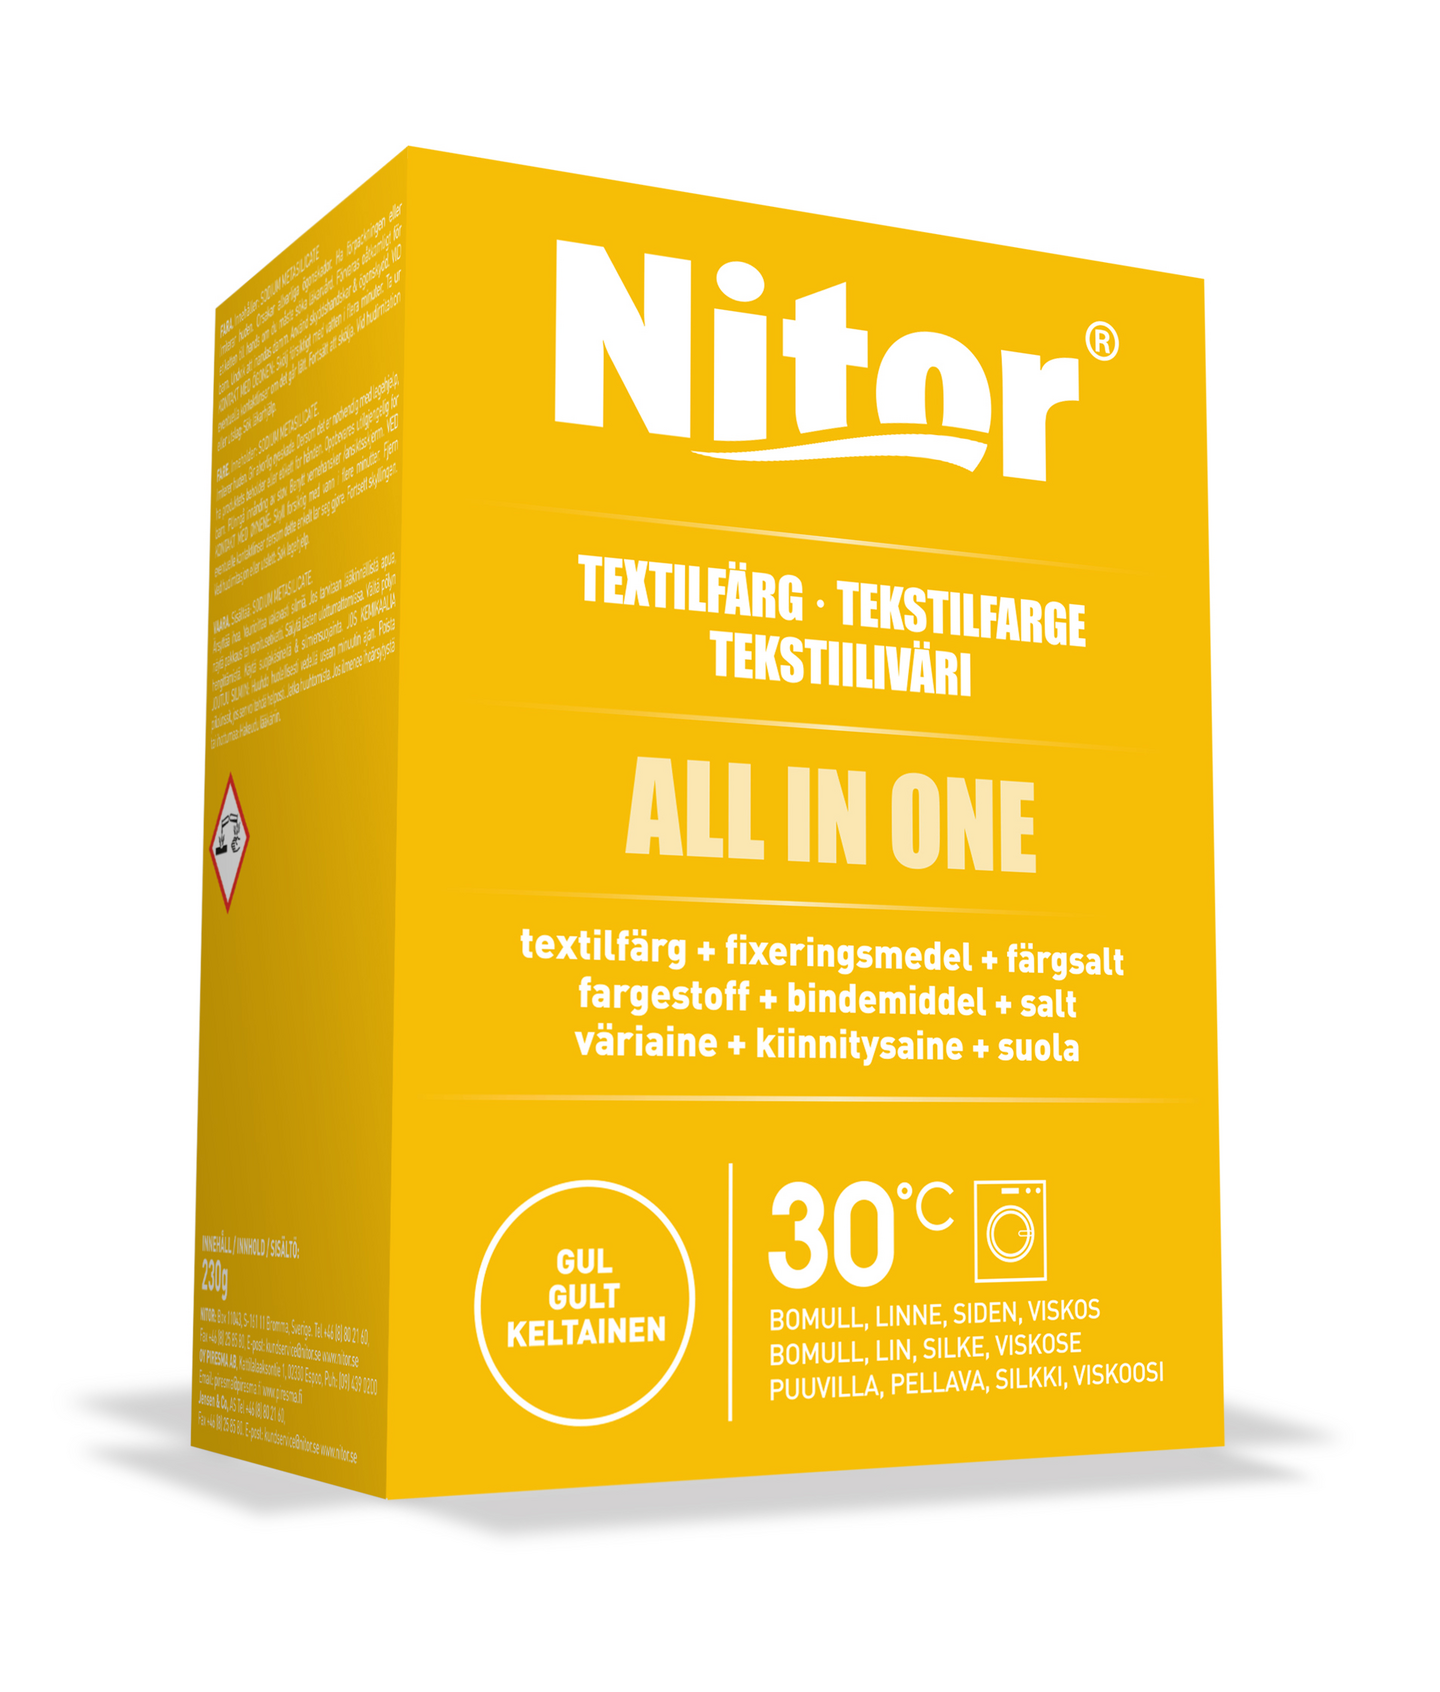 Nitor tekstiiliväri All in one 230g keltainen